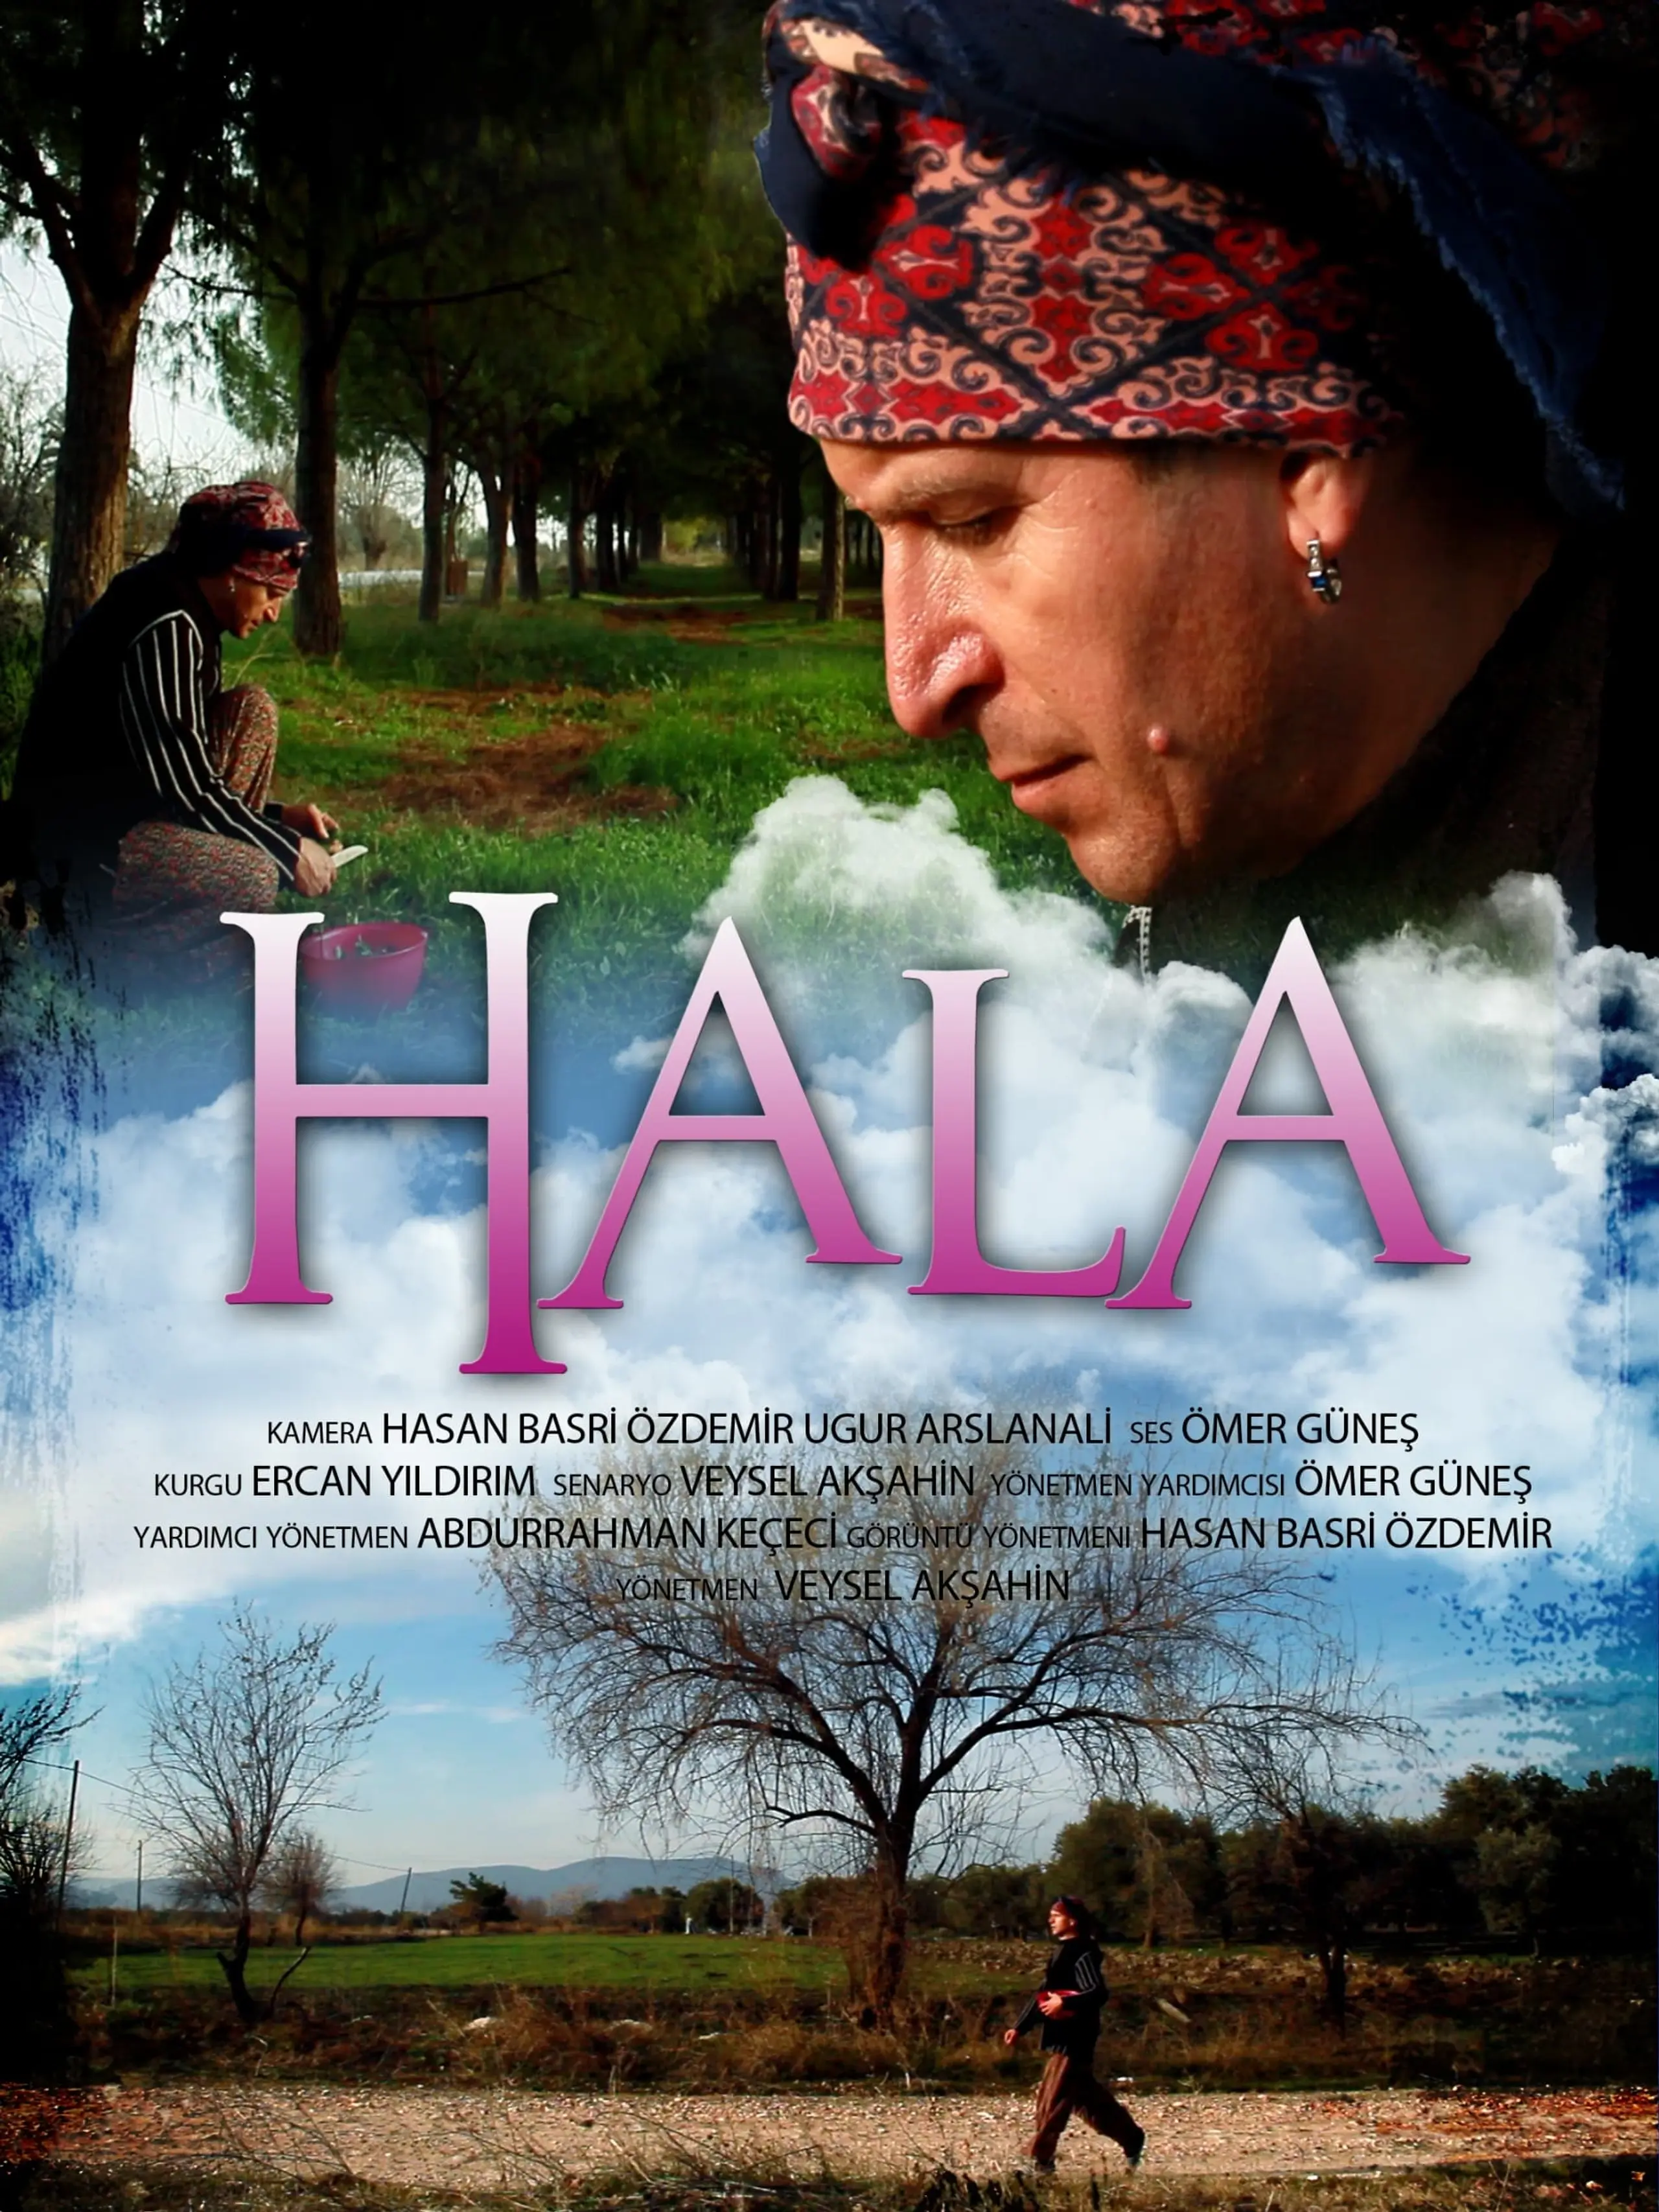 Hala